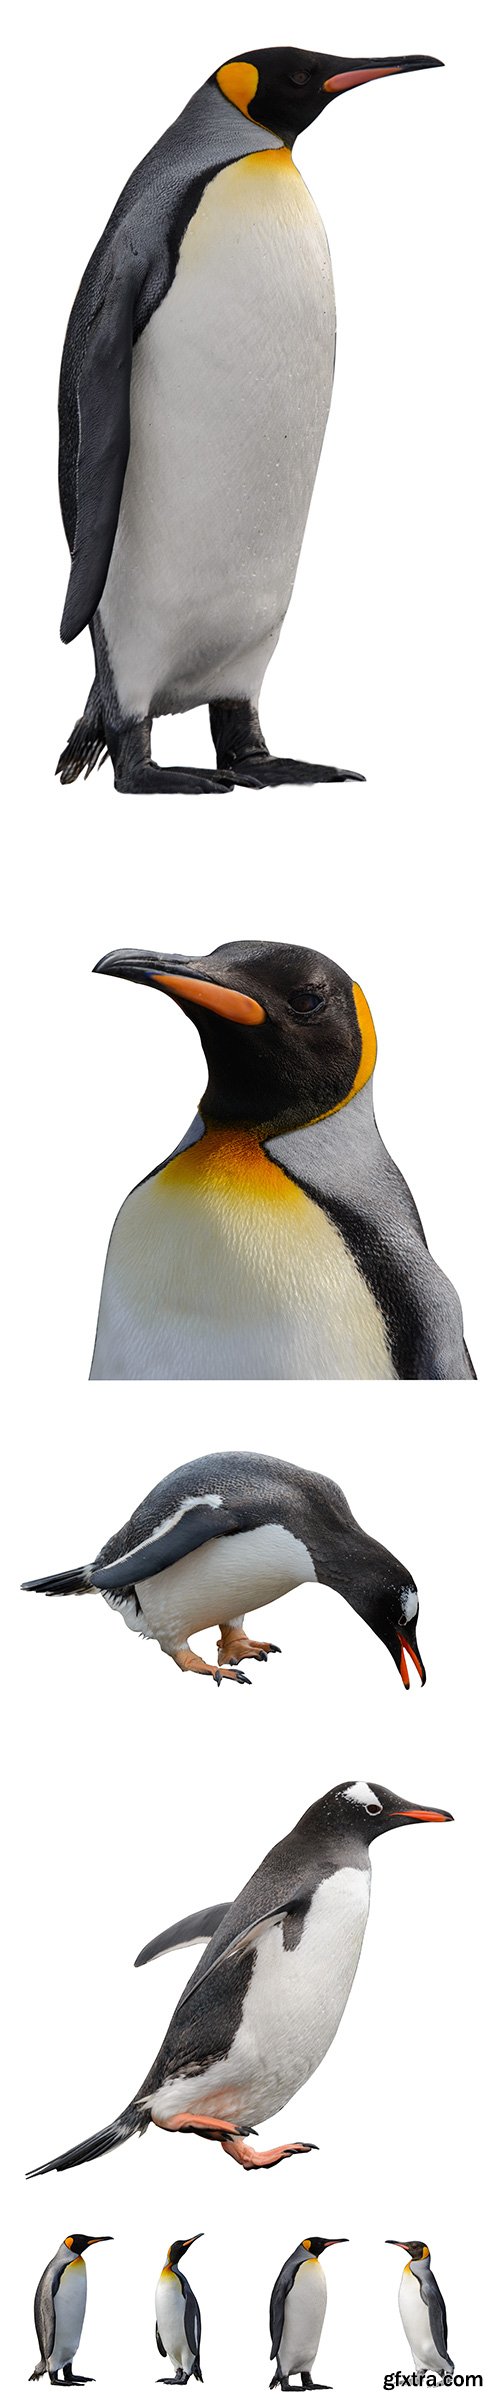 Penguin Isolated - 13xJPGs